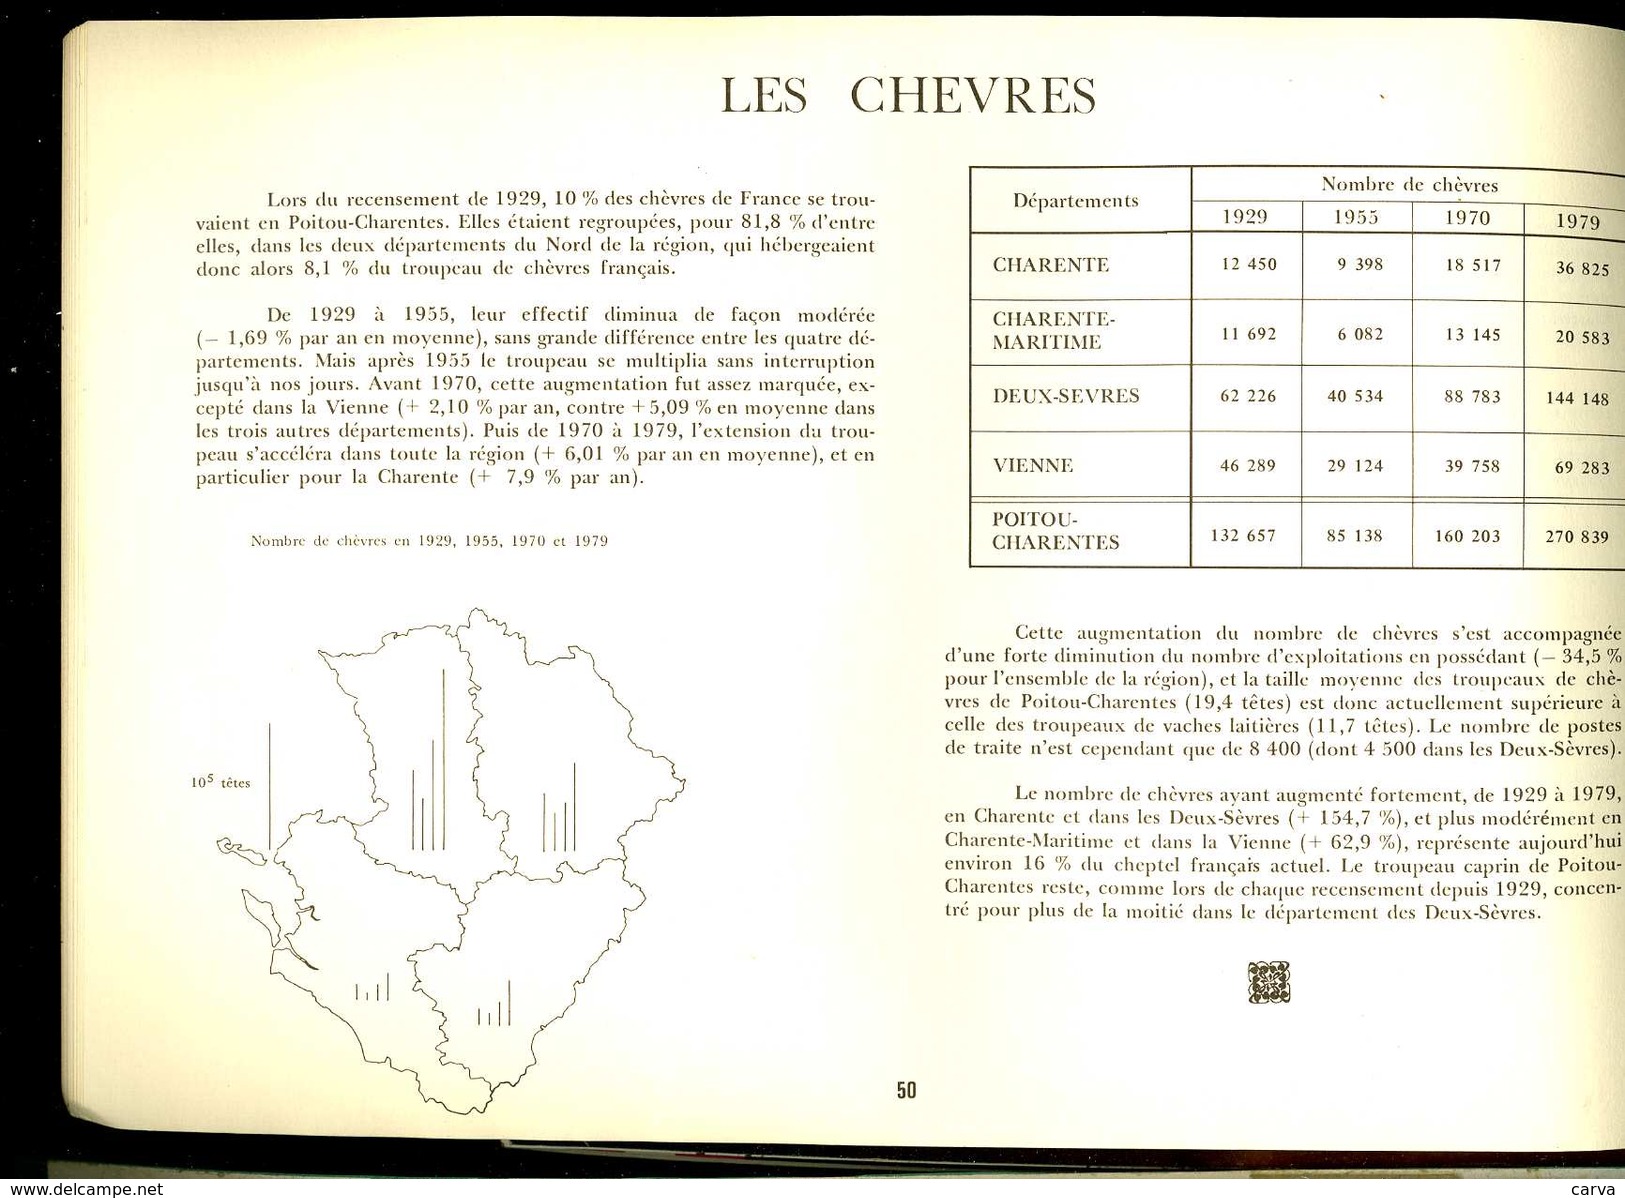 50 Ans D' Agriculture En Poitou Charentes 1929 1979 ( Les Tracteurs, Les Chevres, Les Lapins, Les Vaches, La Vigne ) - Poitou-Charentes